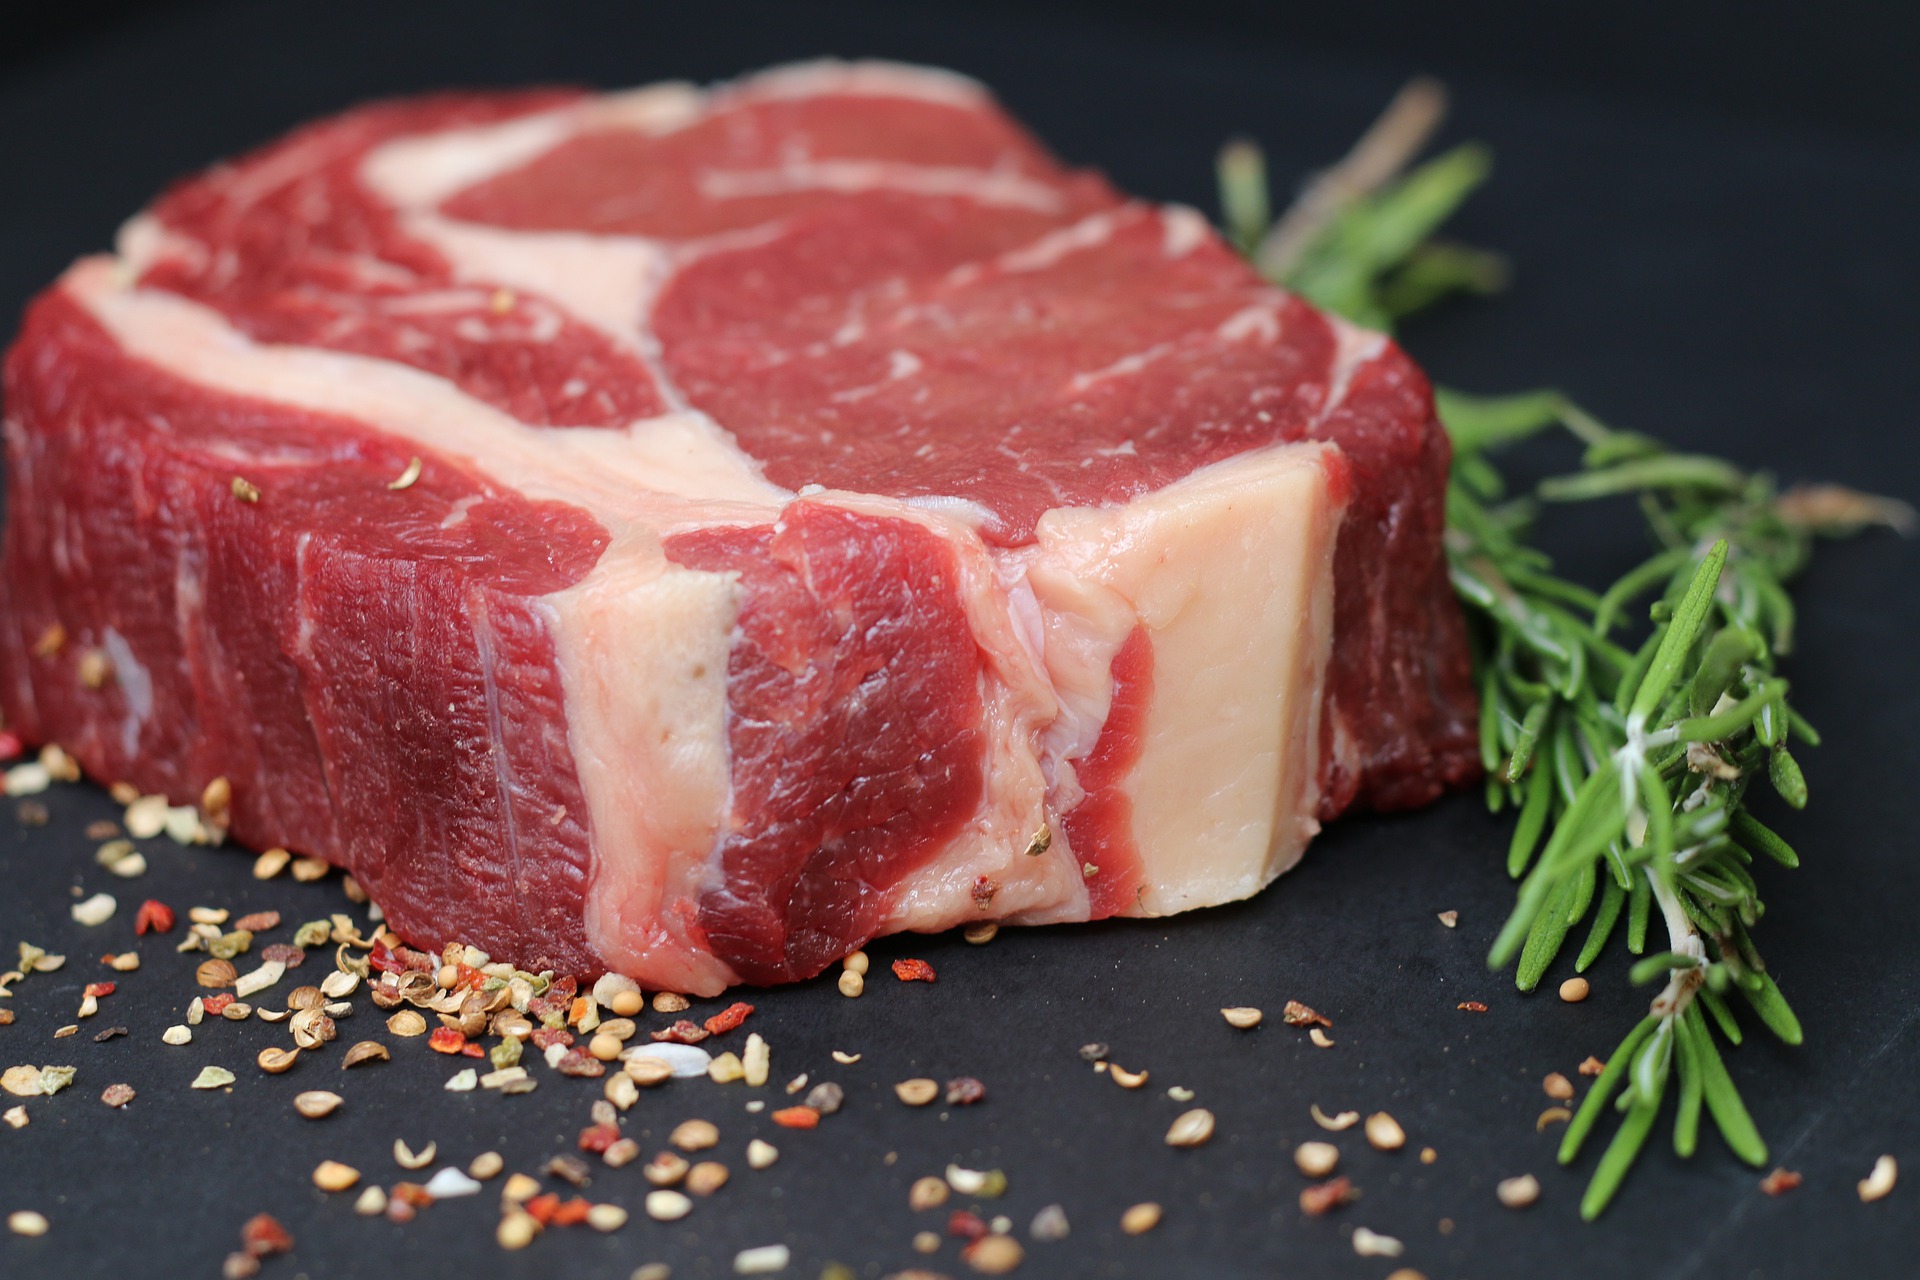 Polscy producenci chcą zrównoważonej produkcji wołowiny